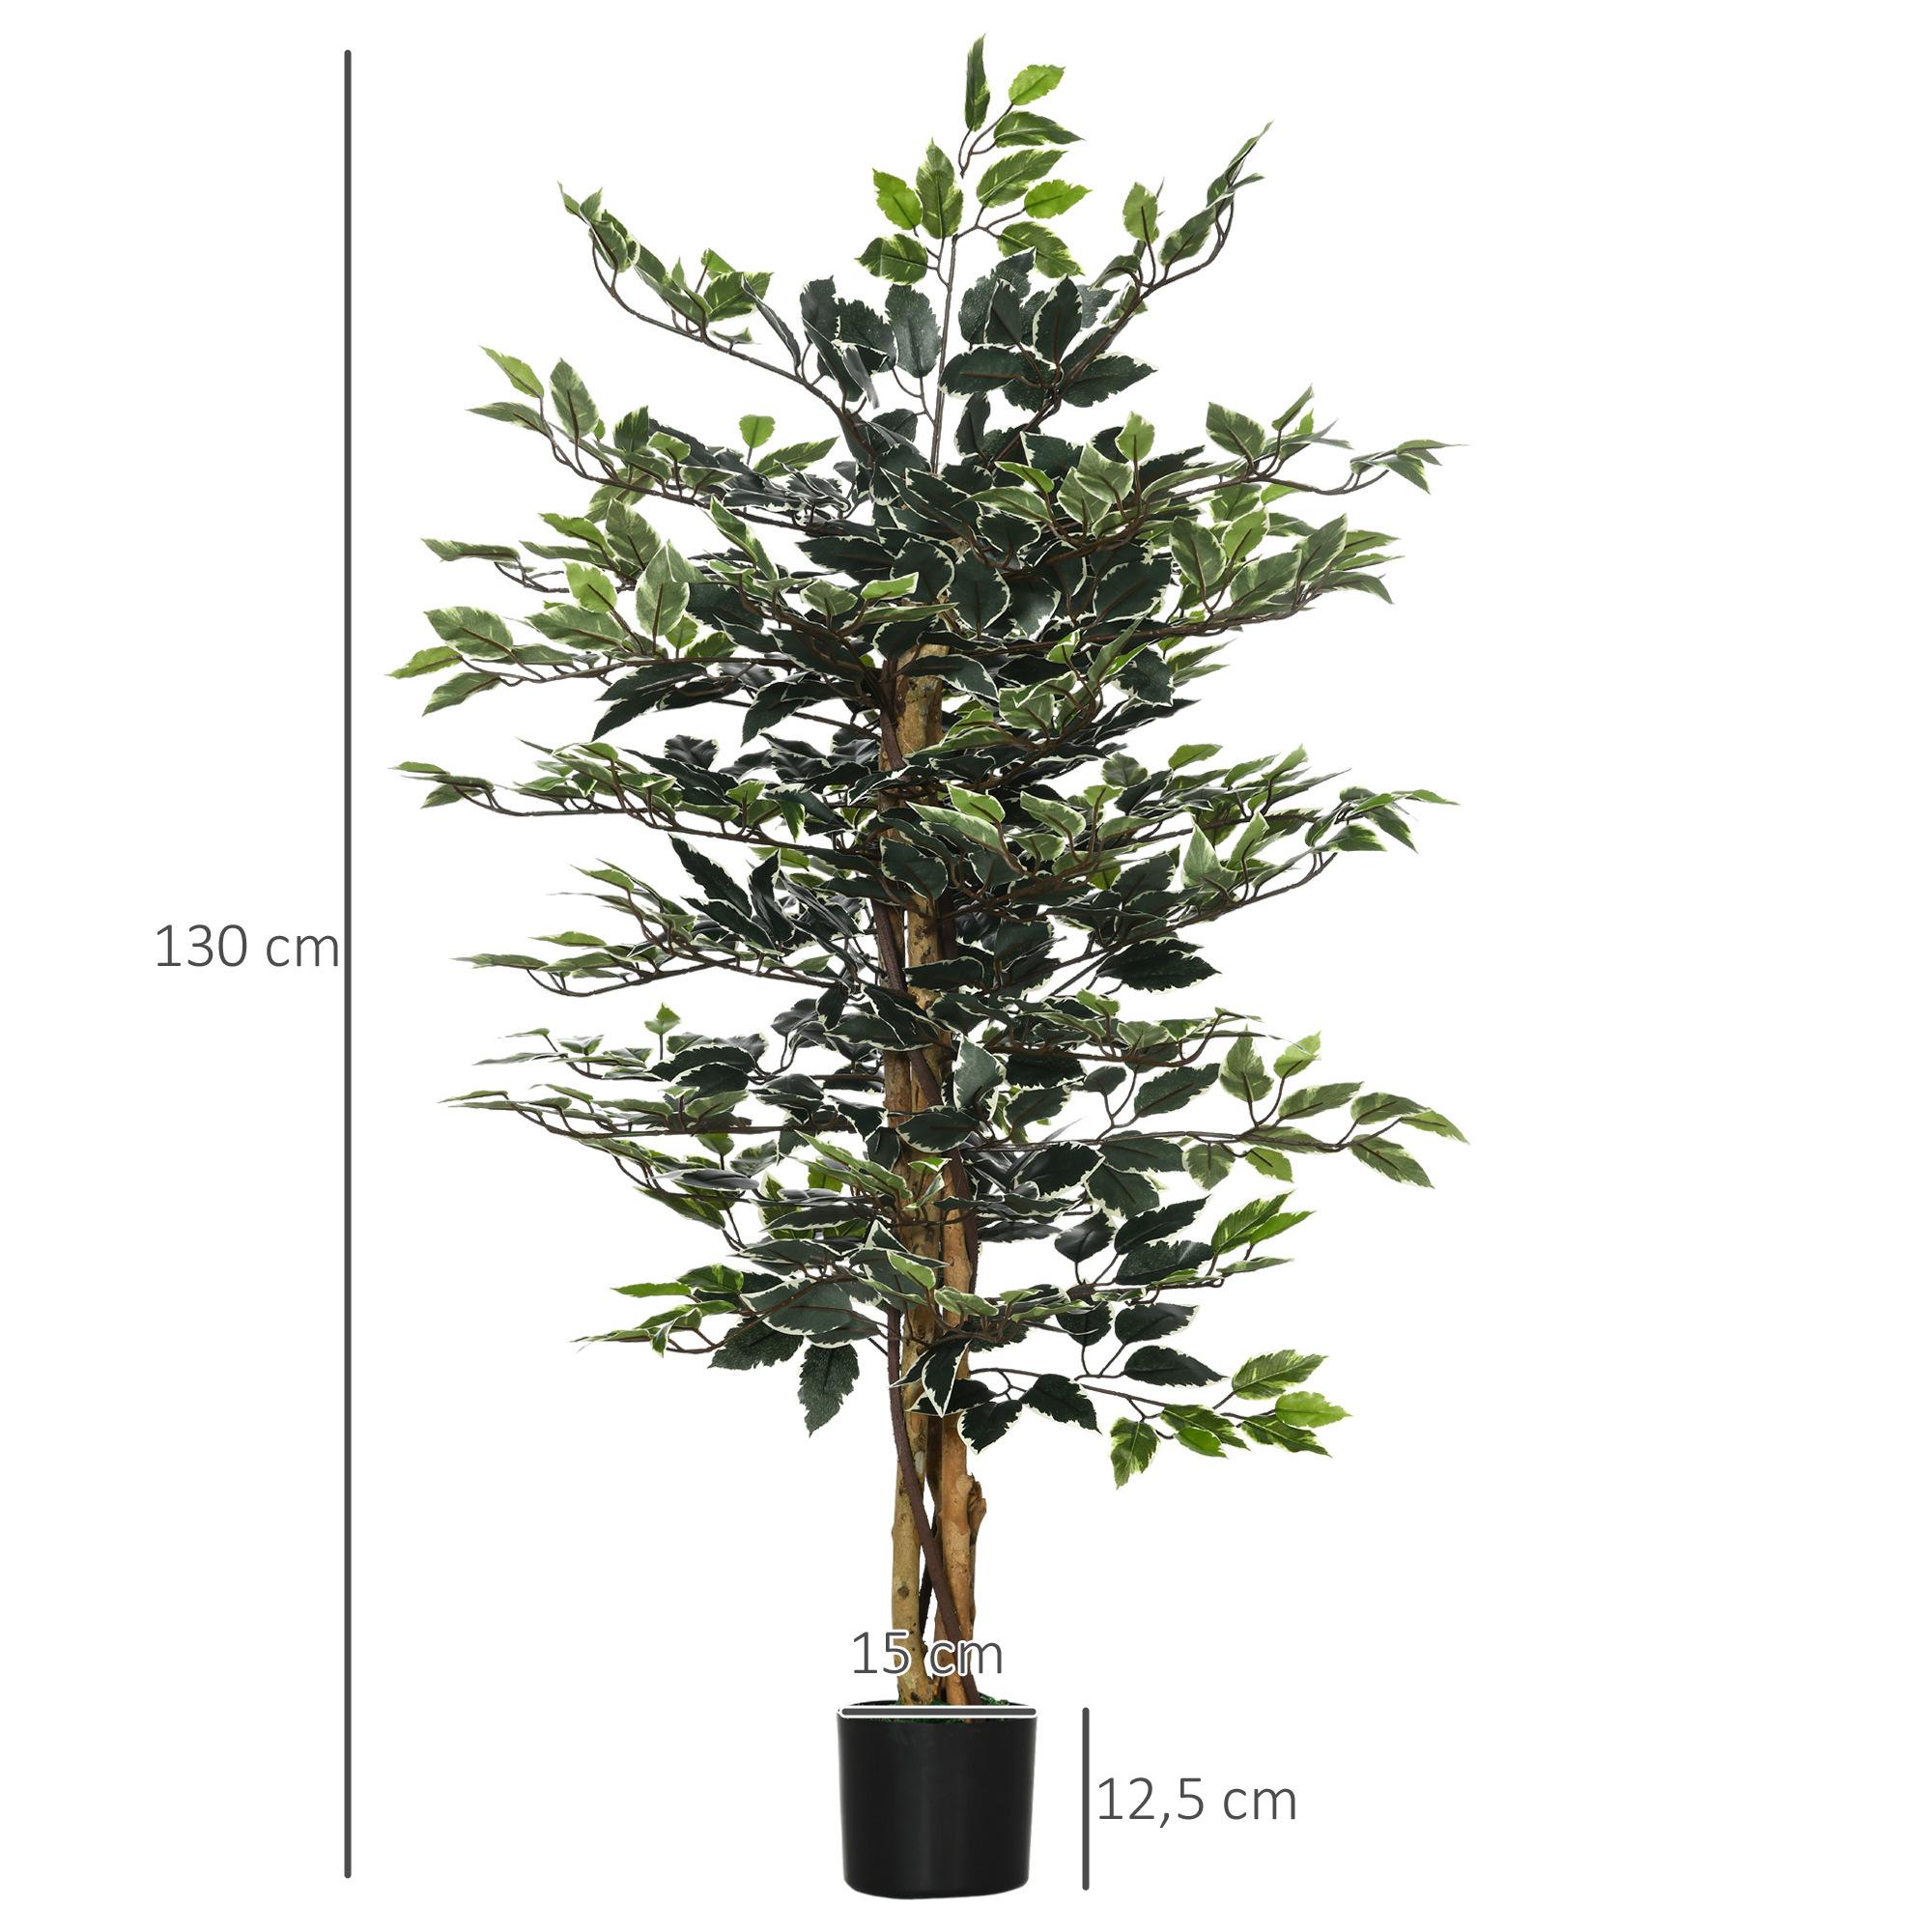 Arbre artificiel plante artificiel ficus banian hauteur 1,3 m tronc branches liane lichen feuilles grand réalisme pot inclus